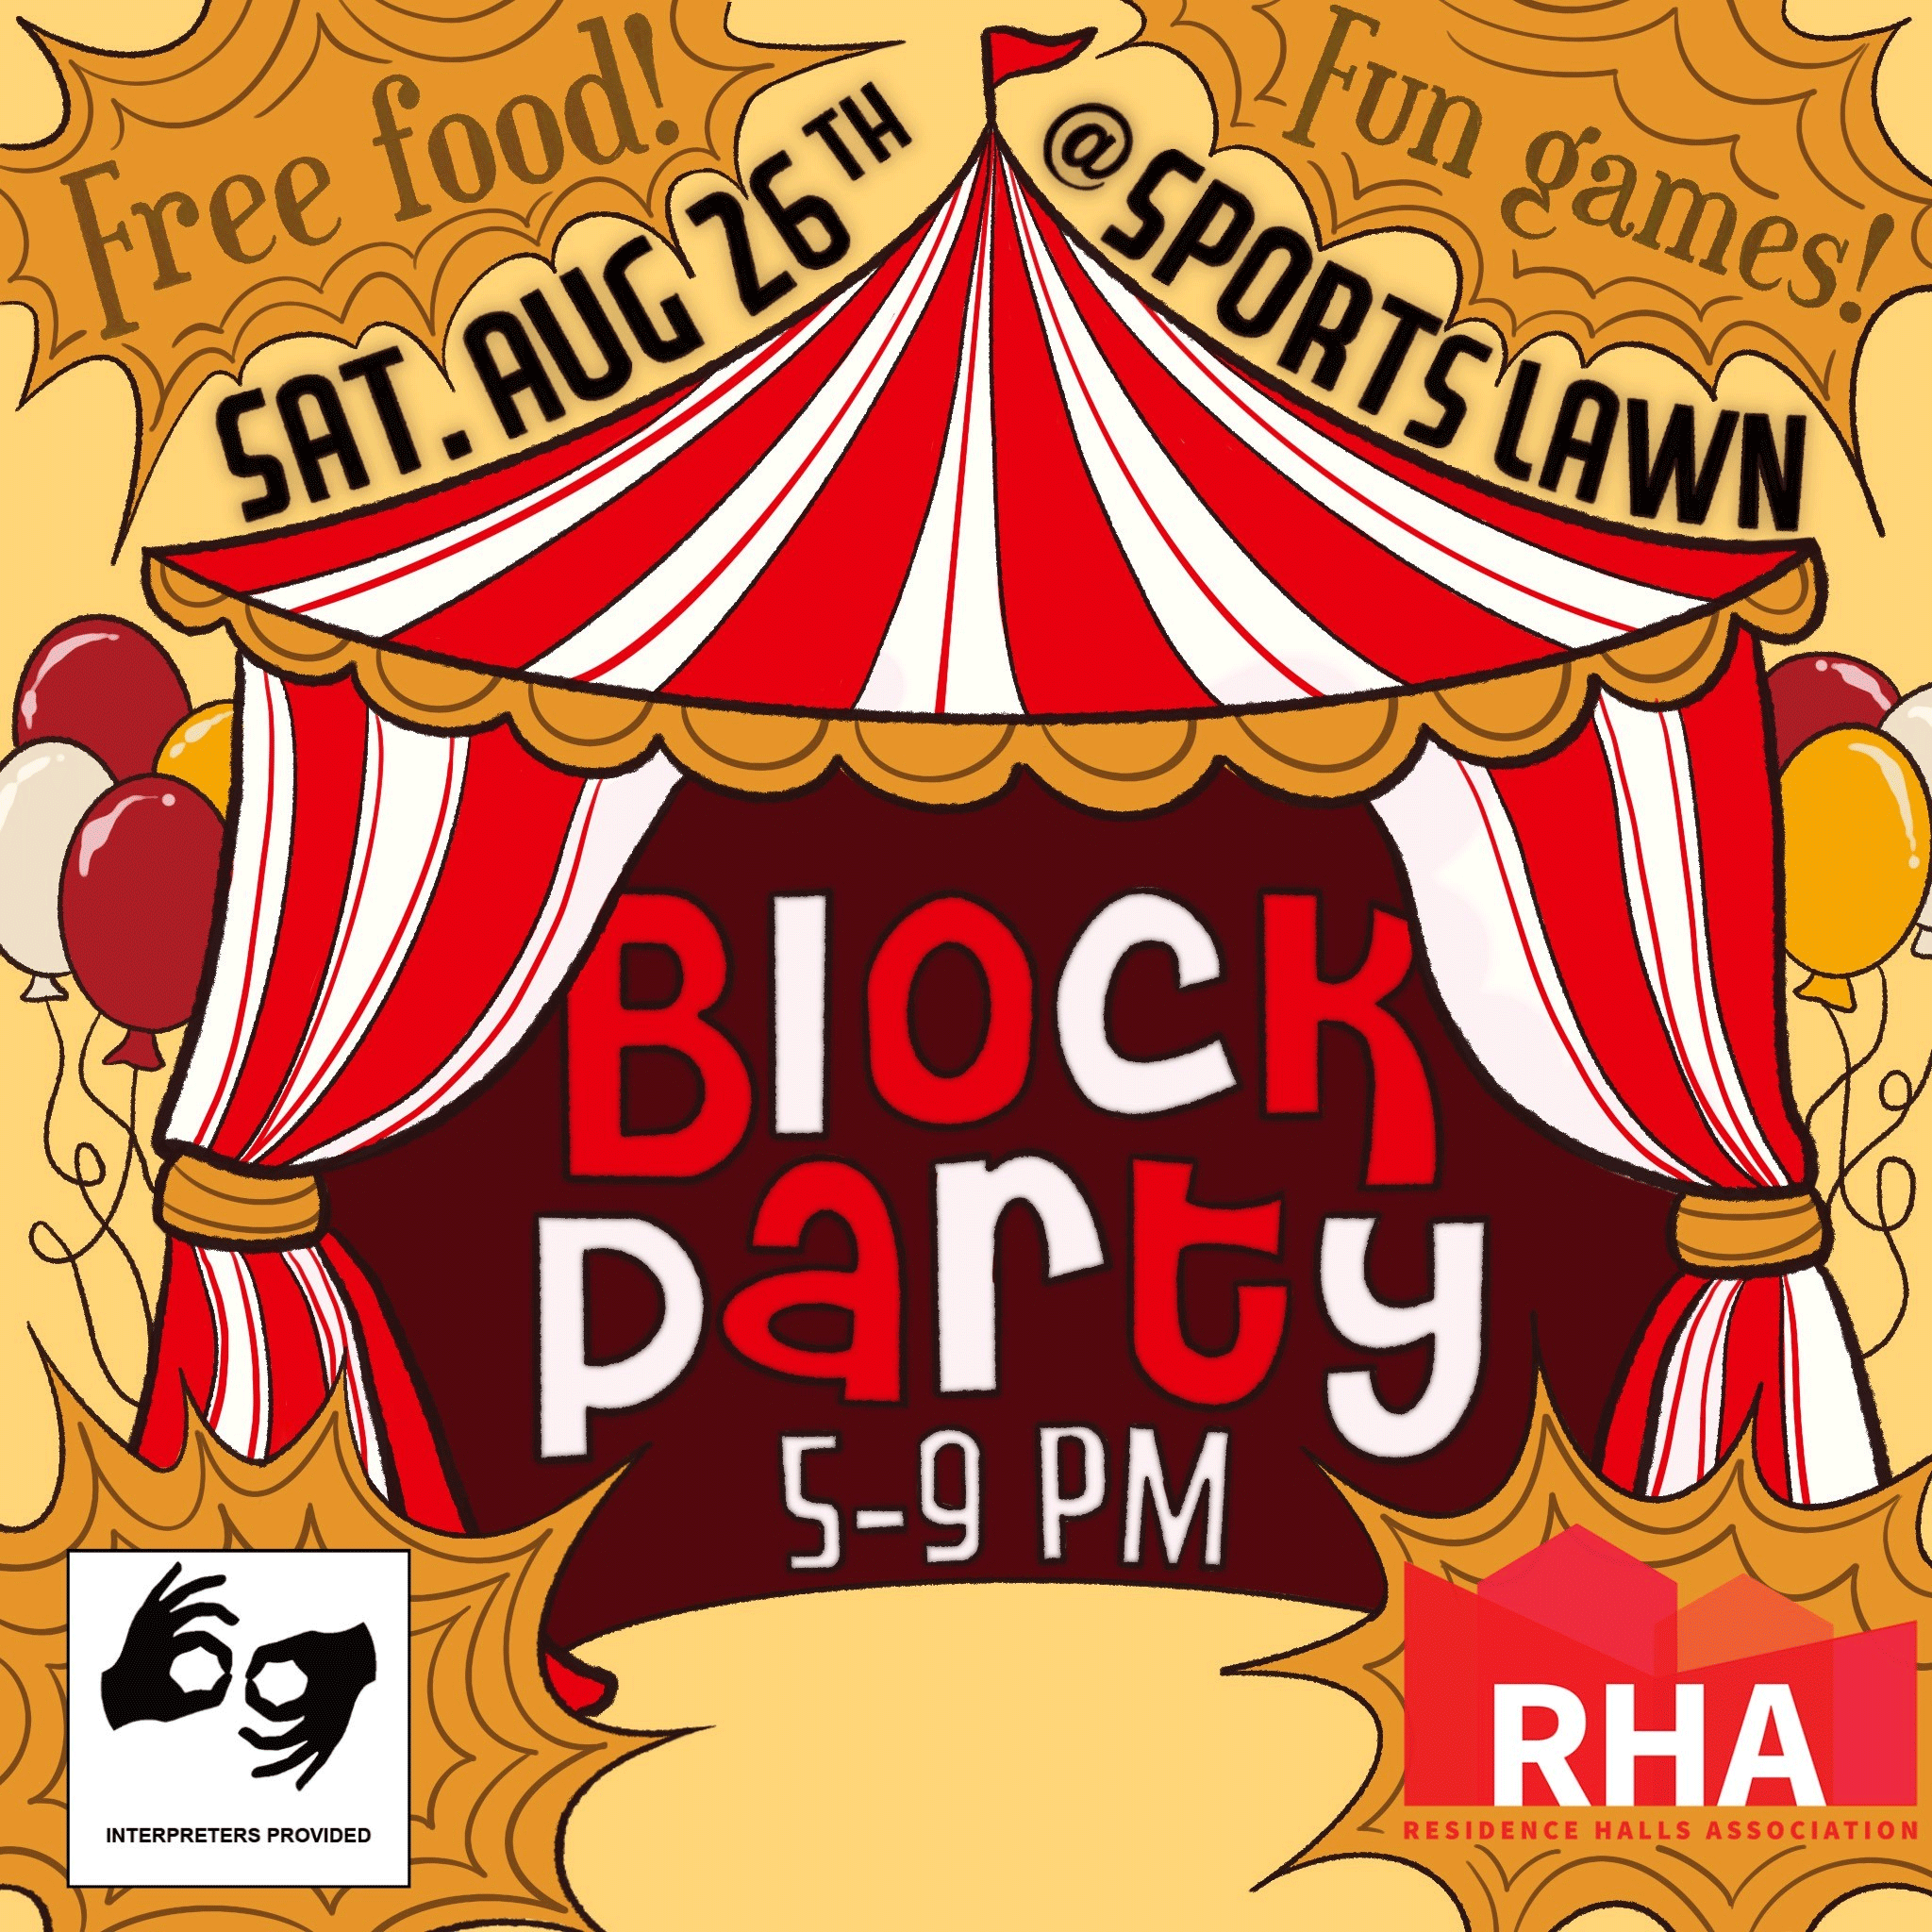 RHA Block Party - Saturday, August 26th @sportslawn: Free food! Fun games!